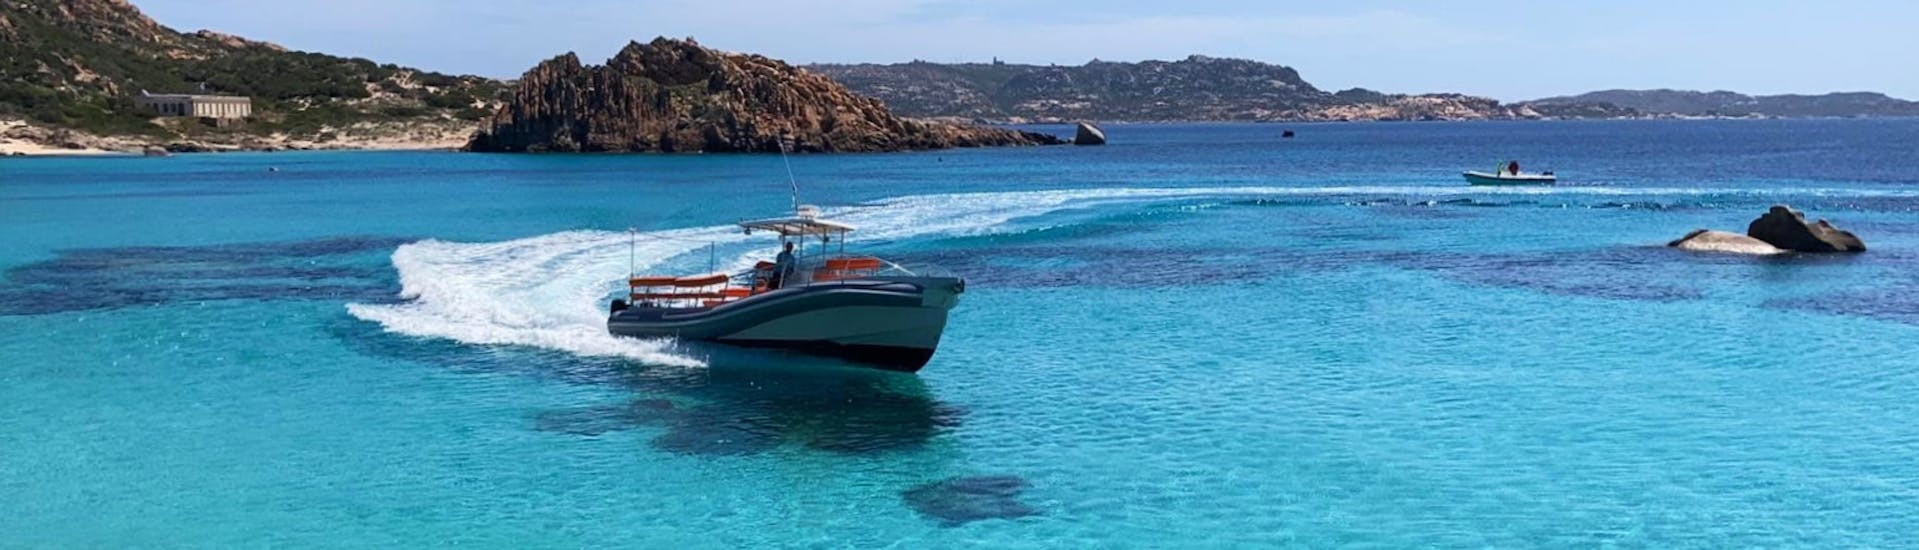 Una delle nostre imbarcazioni navigando nel nord della Sardegna durante una gita in gommone privato da Santa Teresa di Gallura alla Corsica con Estasi Escursioni Santa Teresa di Gallura.